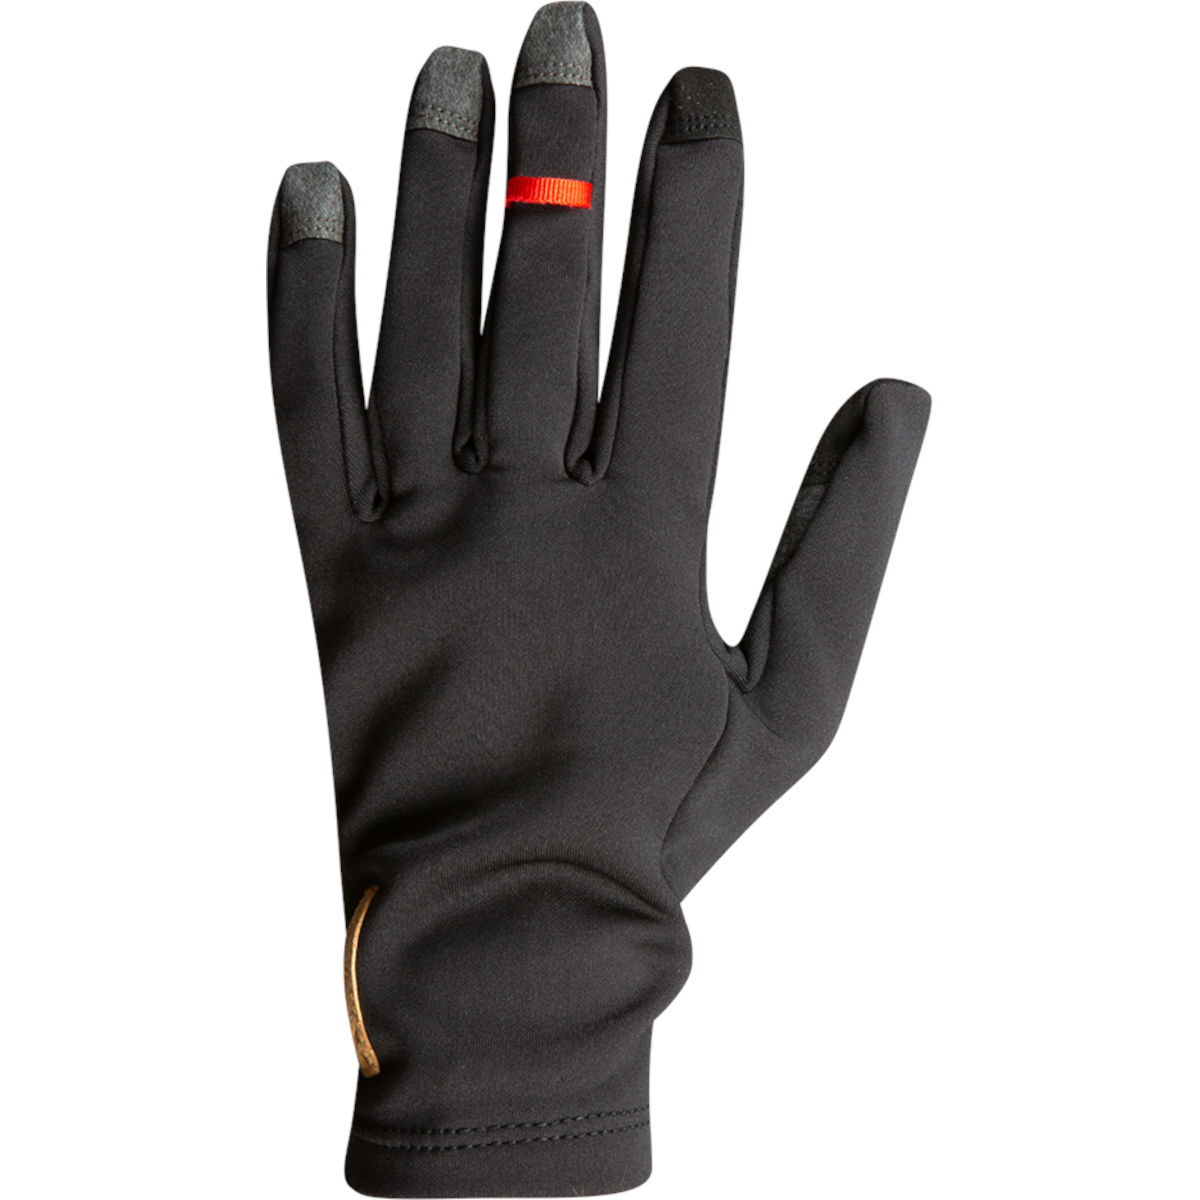 Zimní rukavice PEARL iZUMi Thermal (7 až 18°C) černé